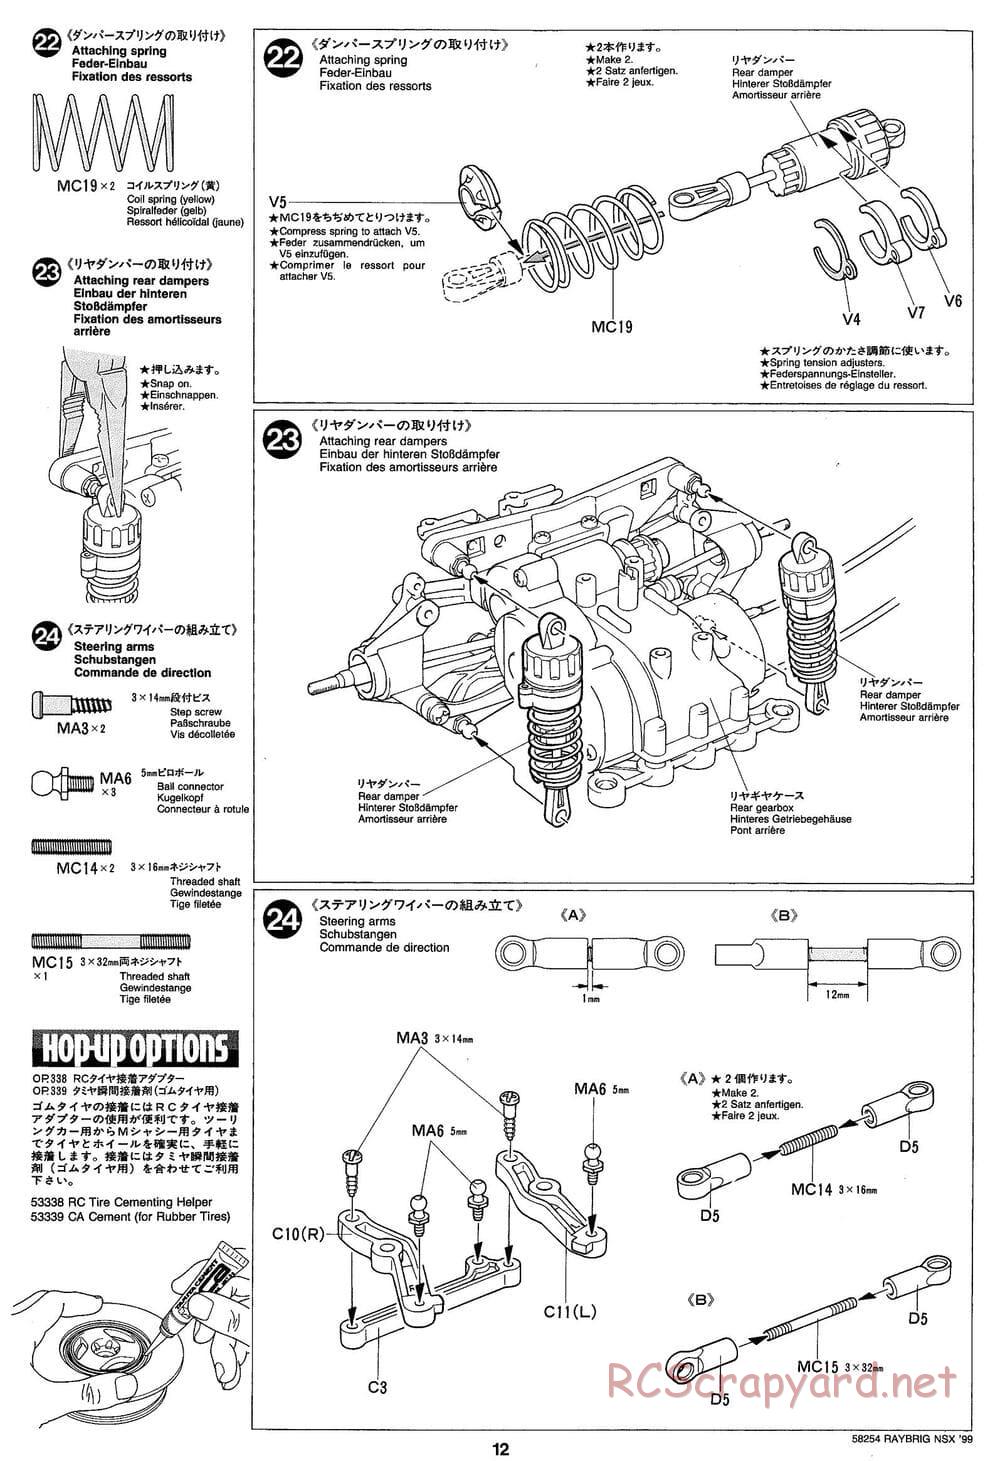 Tamiya - Raybrig NSX 99 - TA-03R Chassis - Manual - Page 12